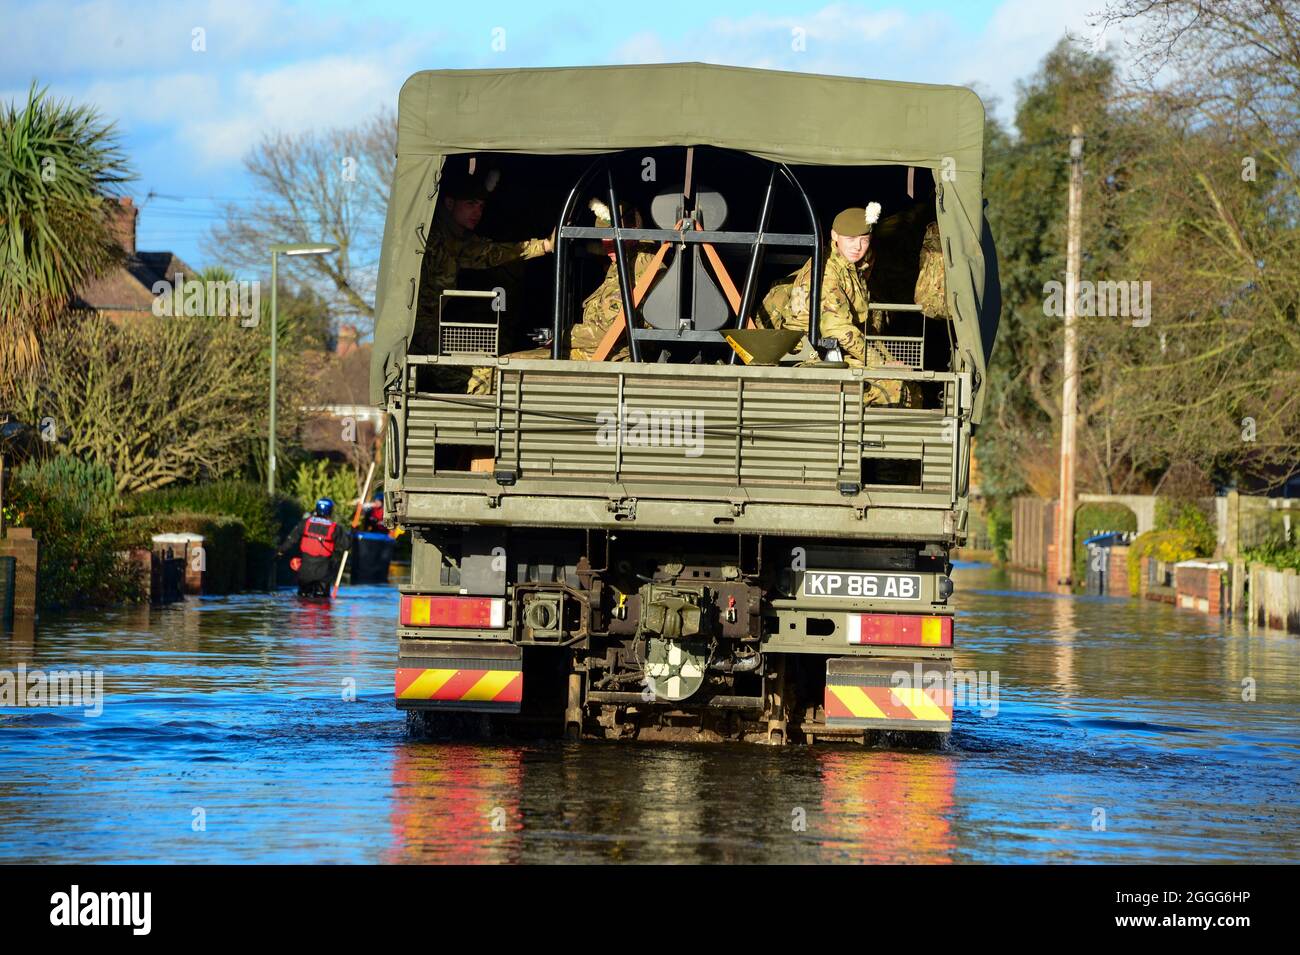 L'armée britannique aide les habitants de Chertsey, victime des inondations. Fournir des sacs de sable et de l'aide au besoin Banque D'Images